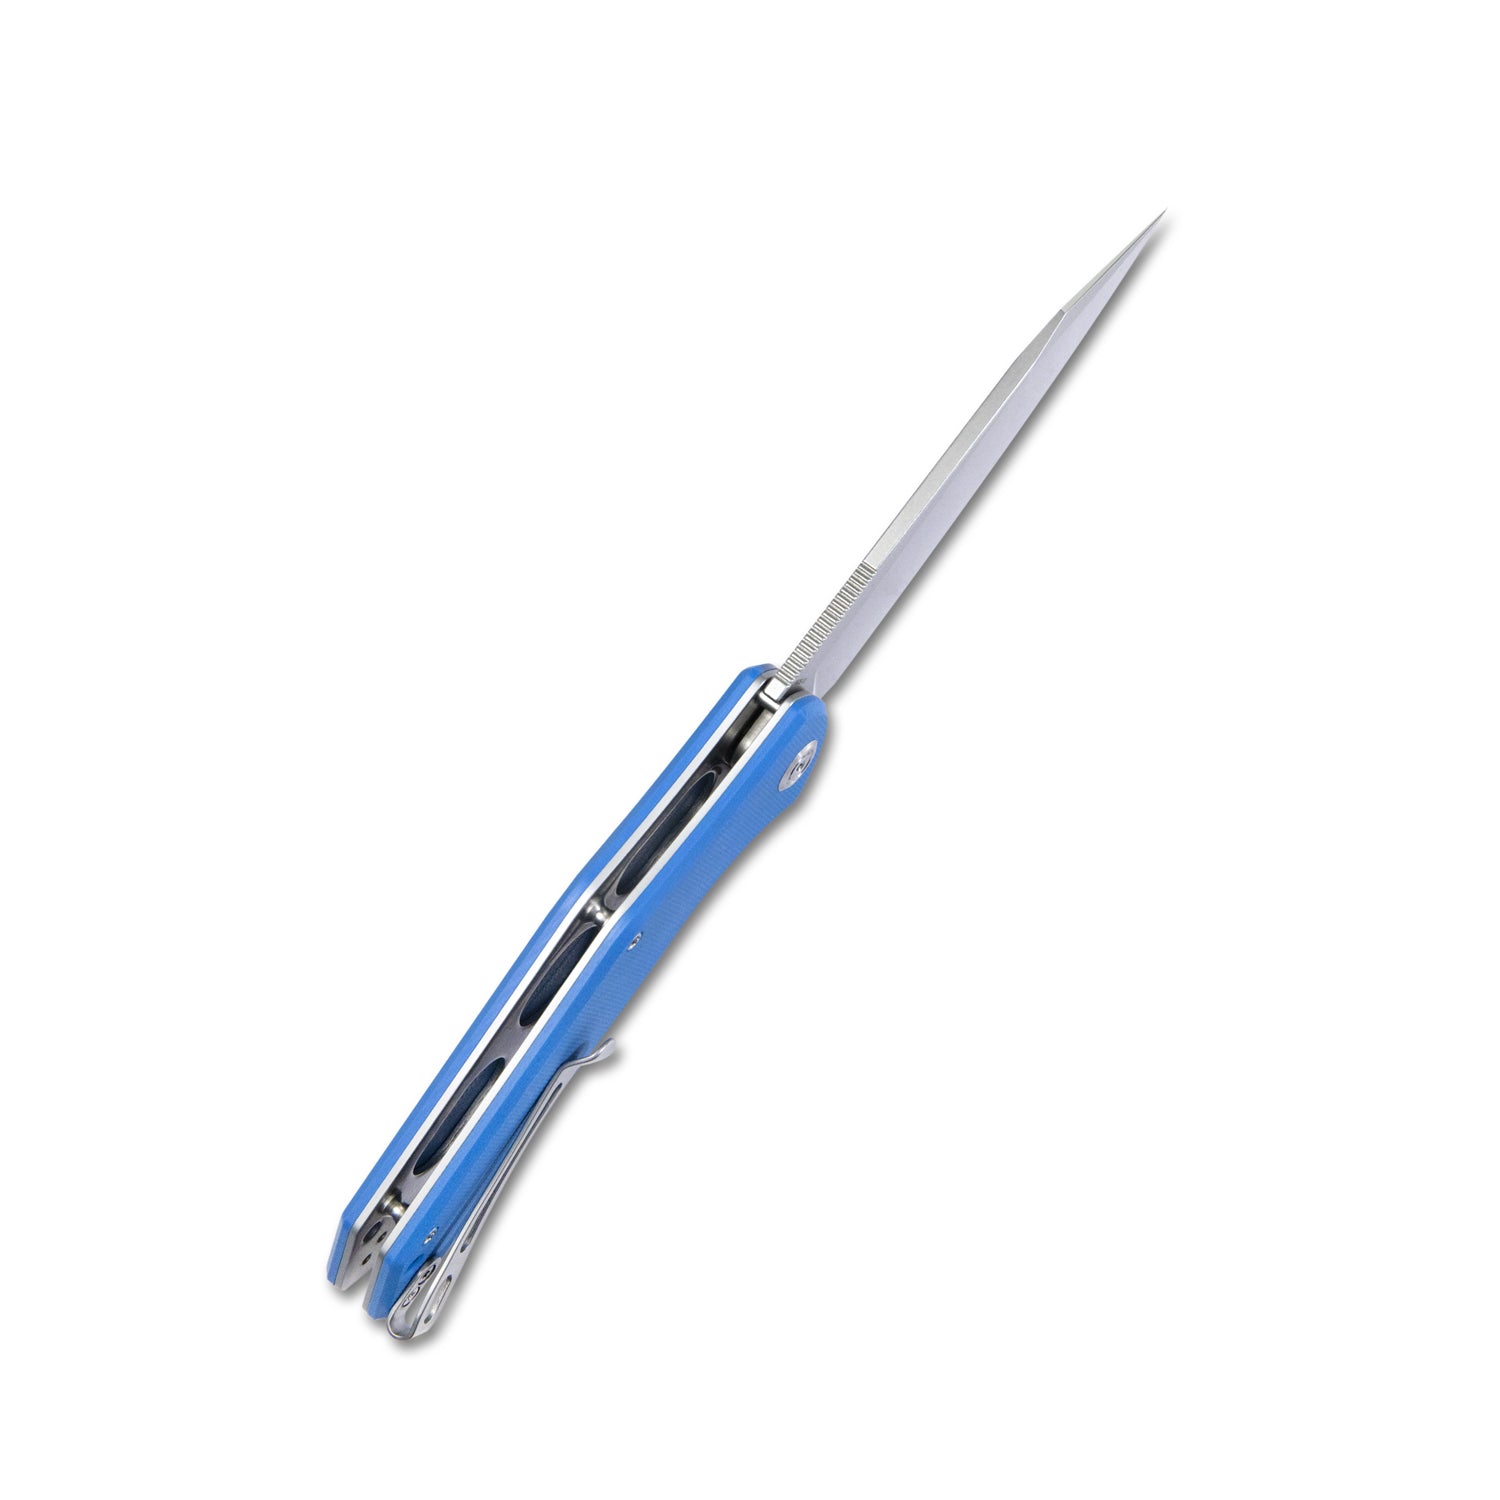 Kubey Flash Liner Lock Flipper Klappmesser Blauer G10-Griff 3,82" Perlengestrahltes AUS-10 KU158H